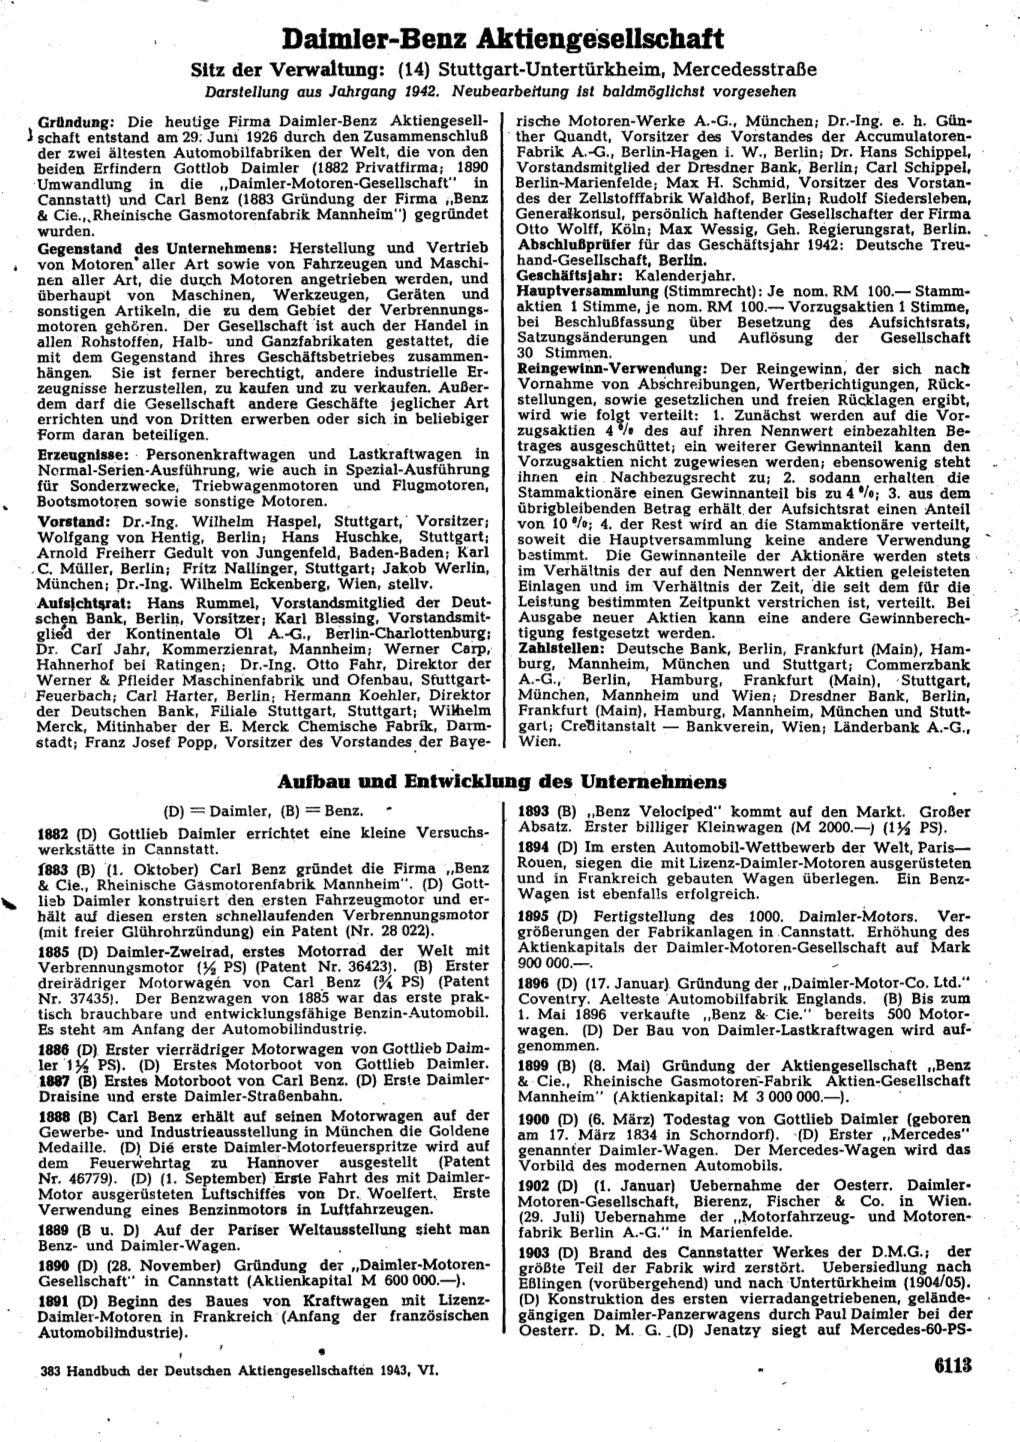 Daimler-Benz Aktiengesellschaft Sitz Der Verwaltung: (14) Stuttgart-Untertürkheim, Mercedesstraße Darstellung Aus Jahrgang 1942